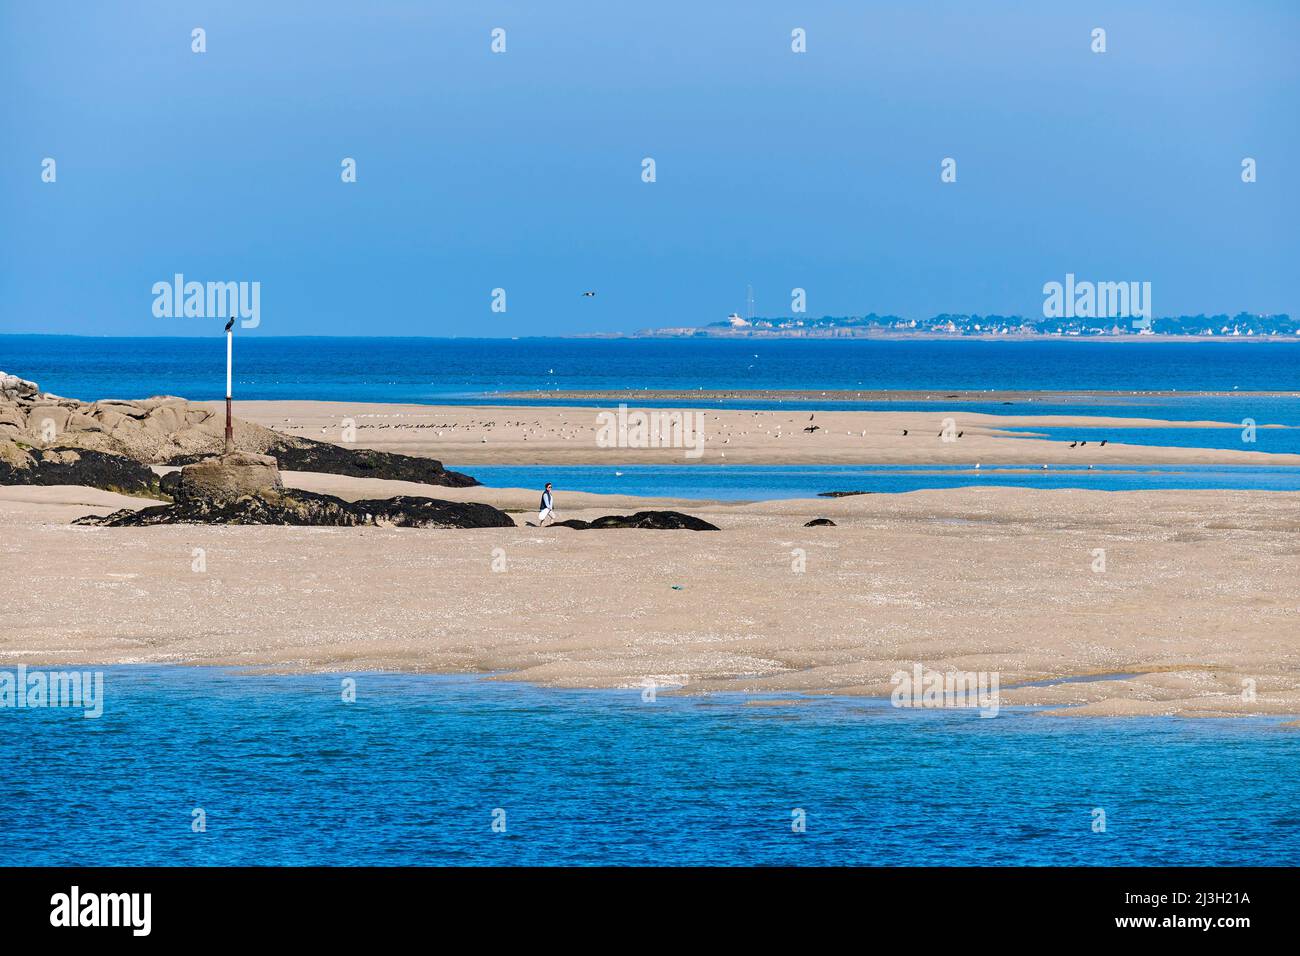 France, Loire Atlantique, Guerande peninsula, Le Croisic, the Pen Bron channel at low tide Stock Photo